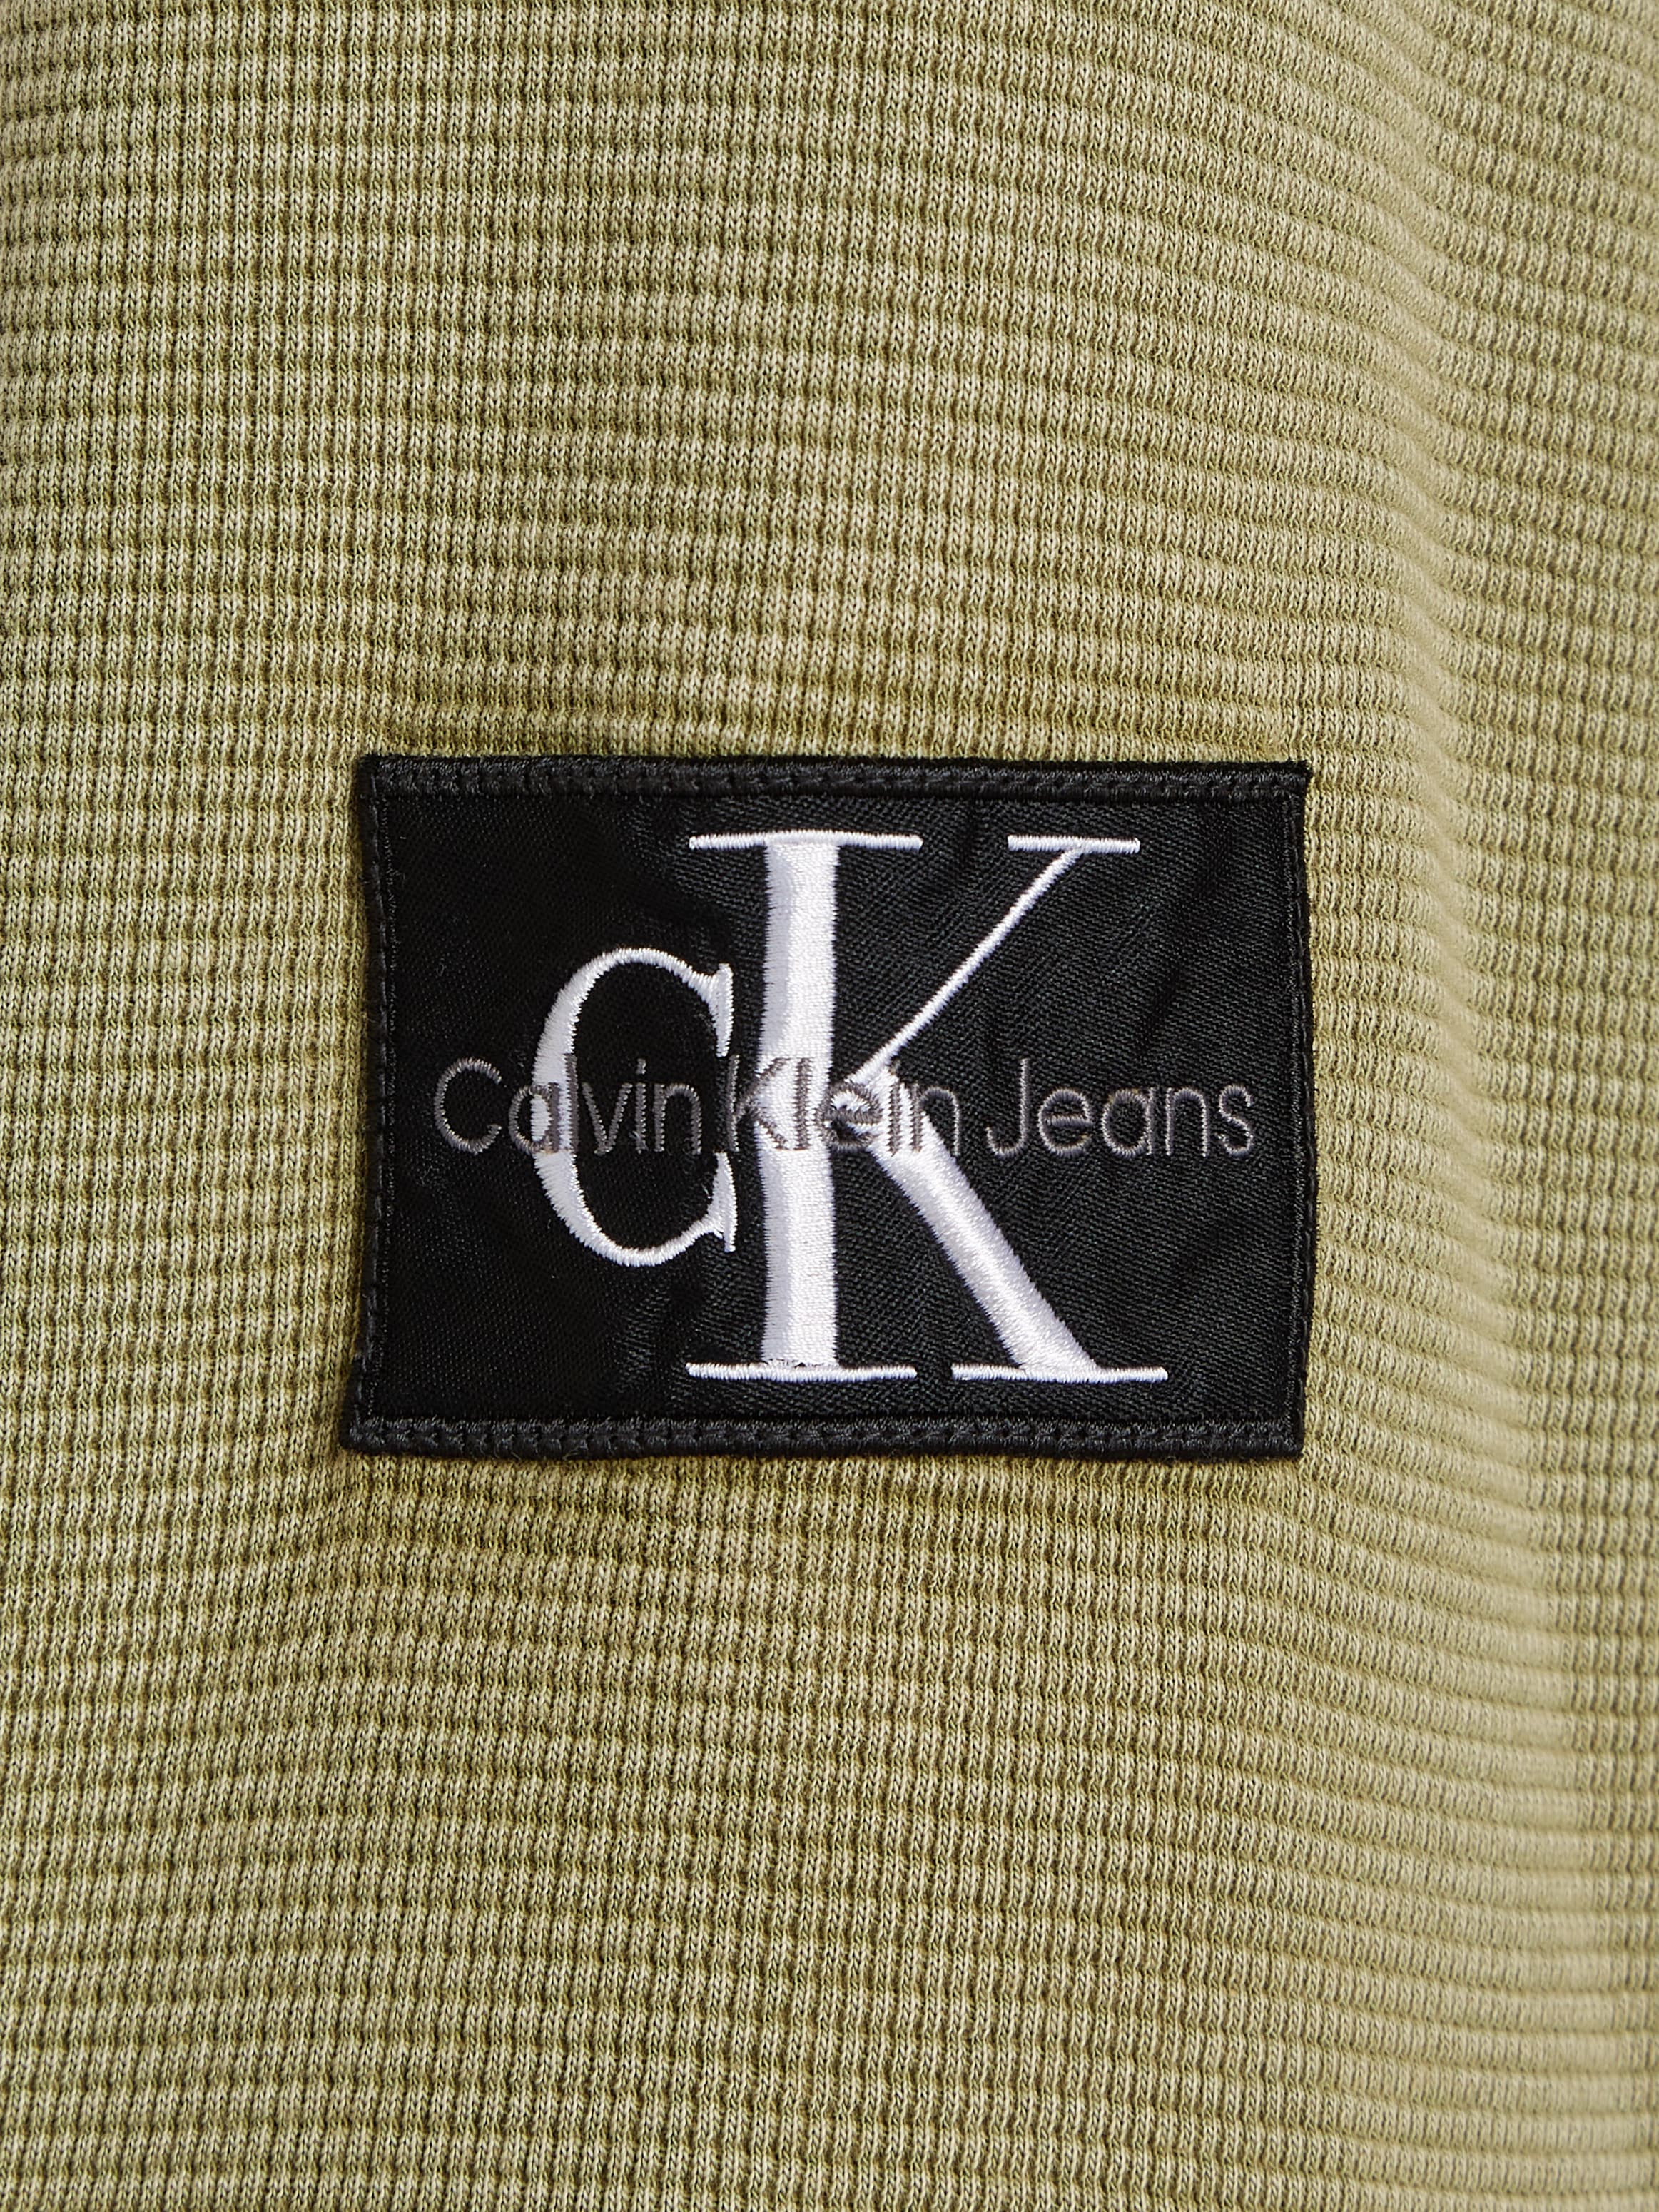 Calvin Klein Jeans TEE«, bei »WASHED BADGE OTTO bestellen WAFFLE Langarmshirt mit LS Logopatch